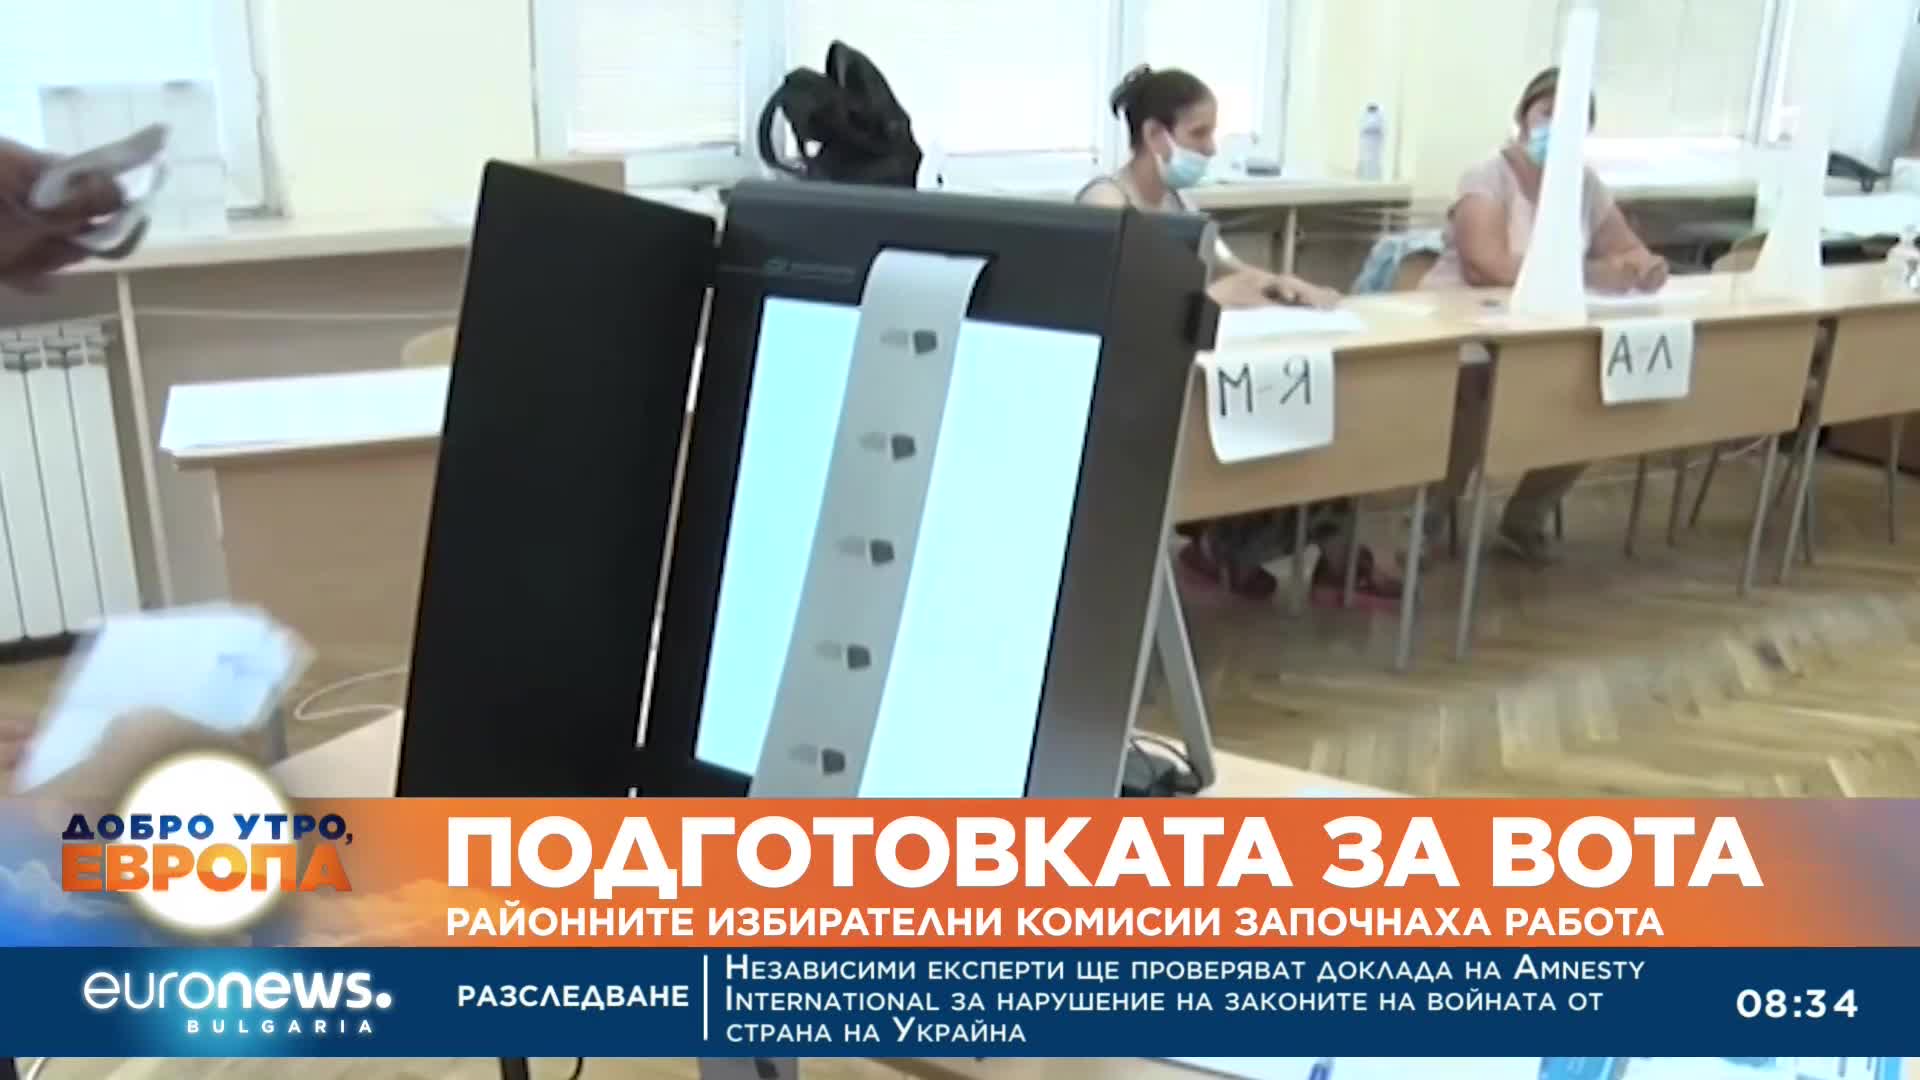 Подготовката за вота: Районните избирателни комисии започнаха работа